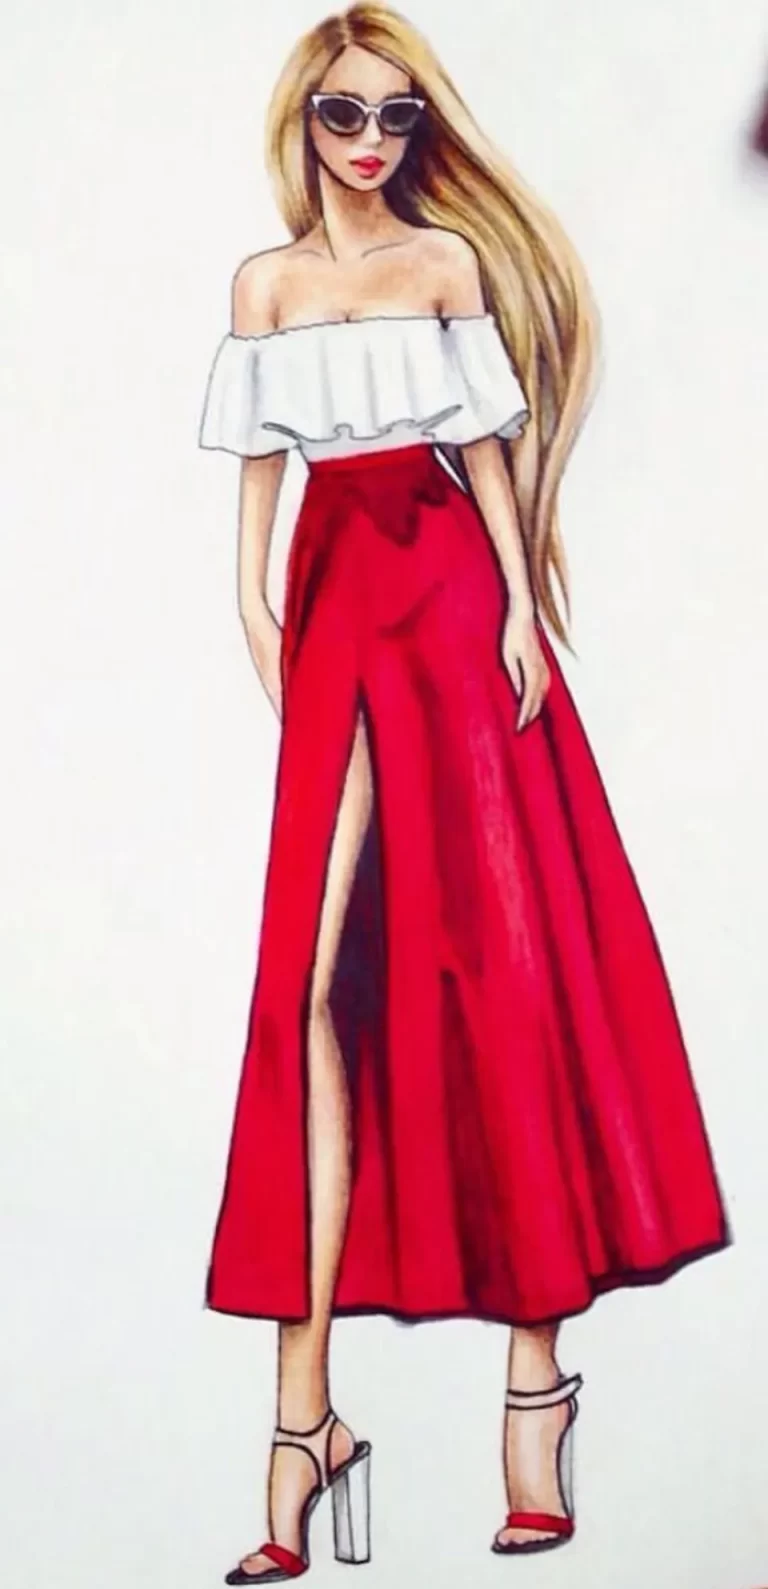 Искусство На Холсте: Неповторимый Рисунок Девушки В Платье Карандашом